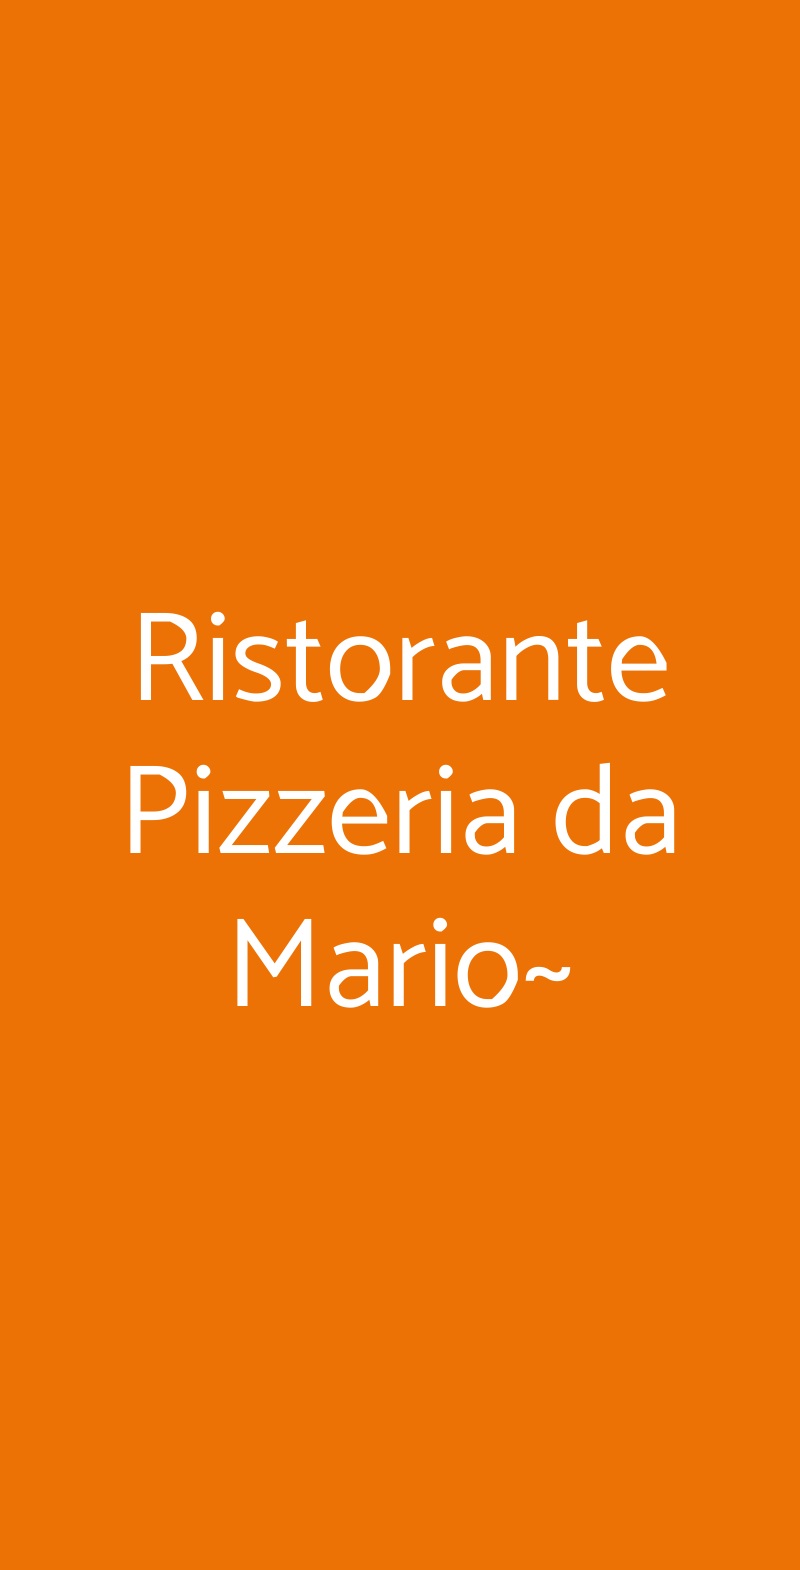 Ristorante Pizzeria da Mario~ Corsico menù 1 pagina